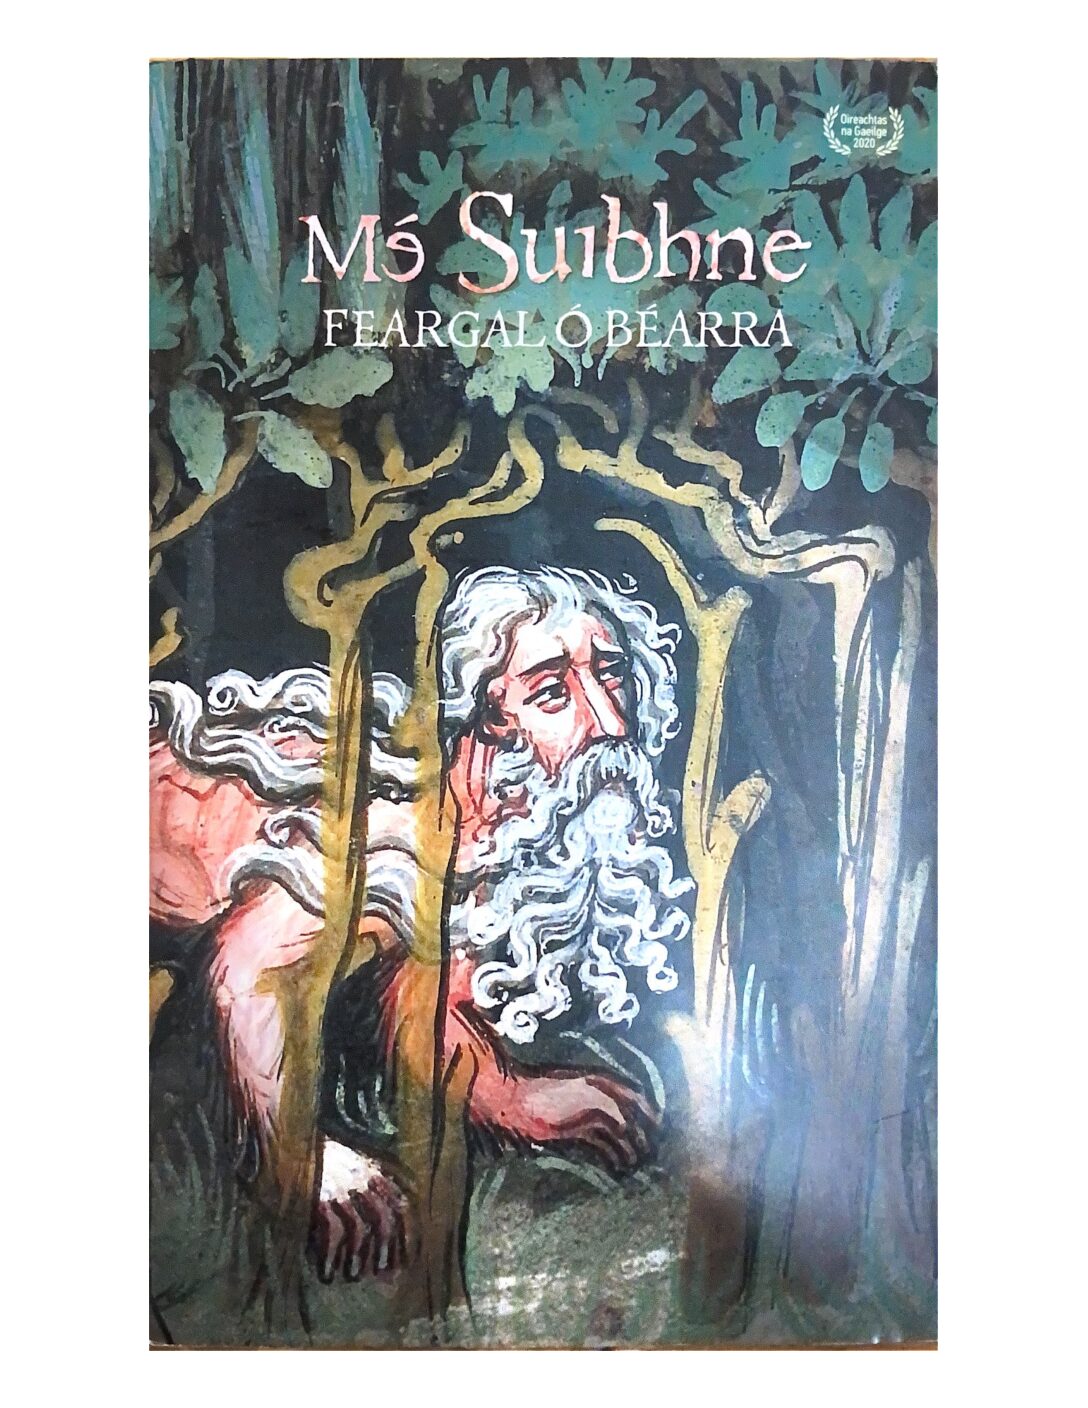 Mé Suibhne by Feargal Ó Béarra